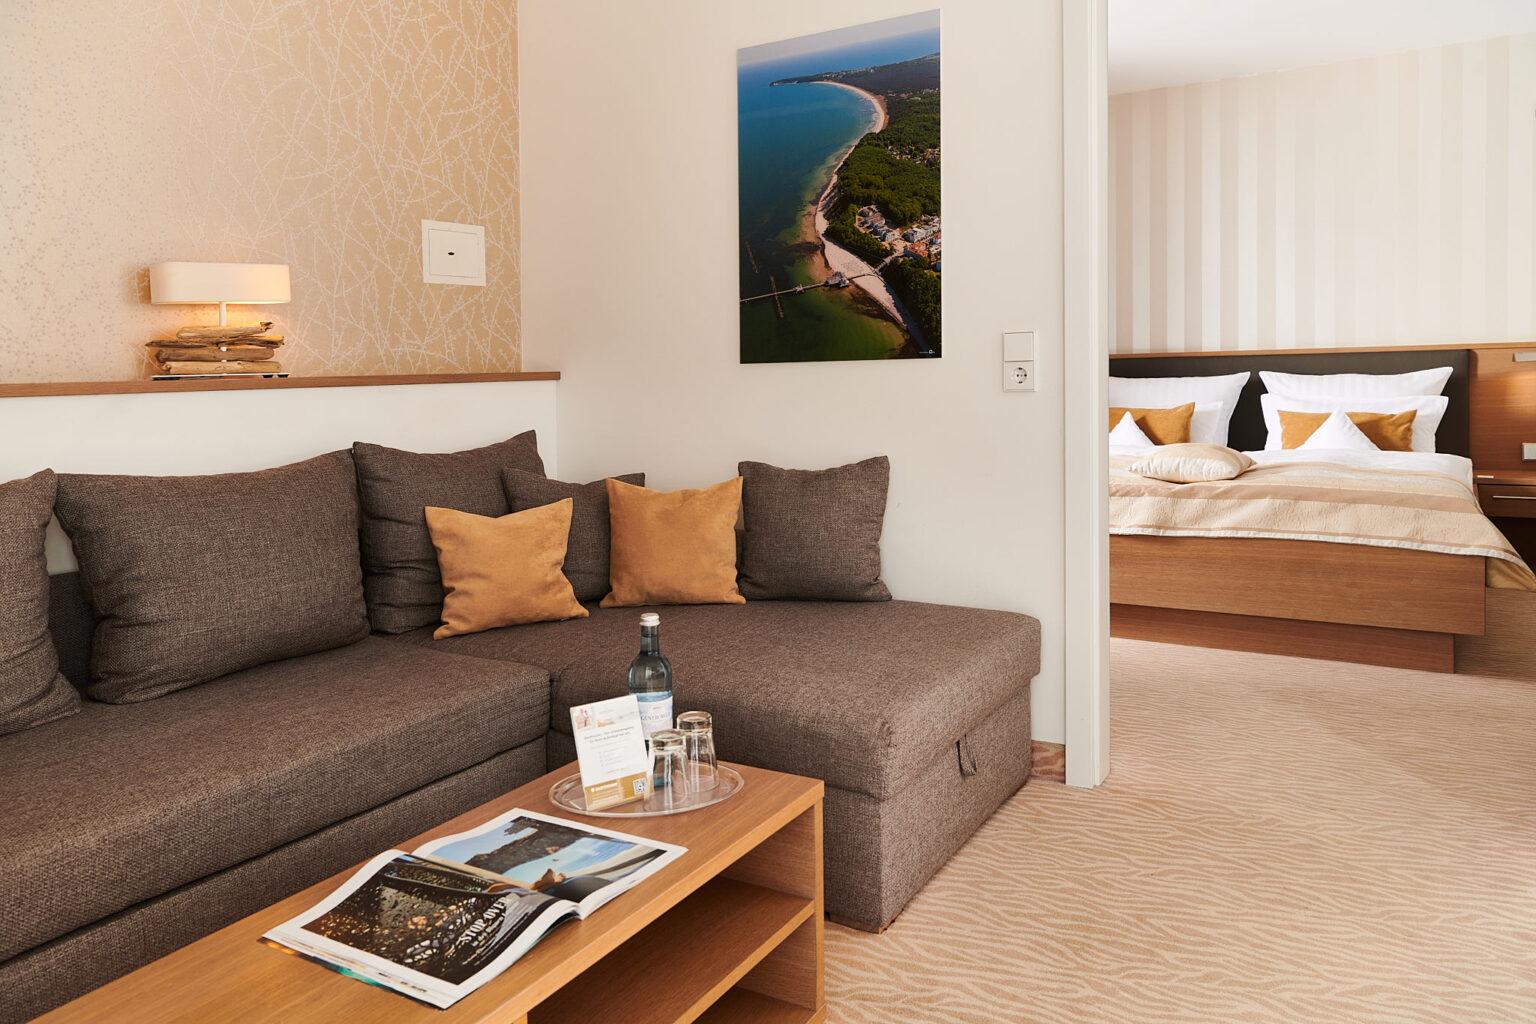 Suite mit 2 Balkonen und Meerblick im Hotel Bernstein Sellin auf Rügen